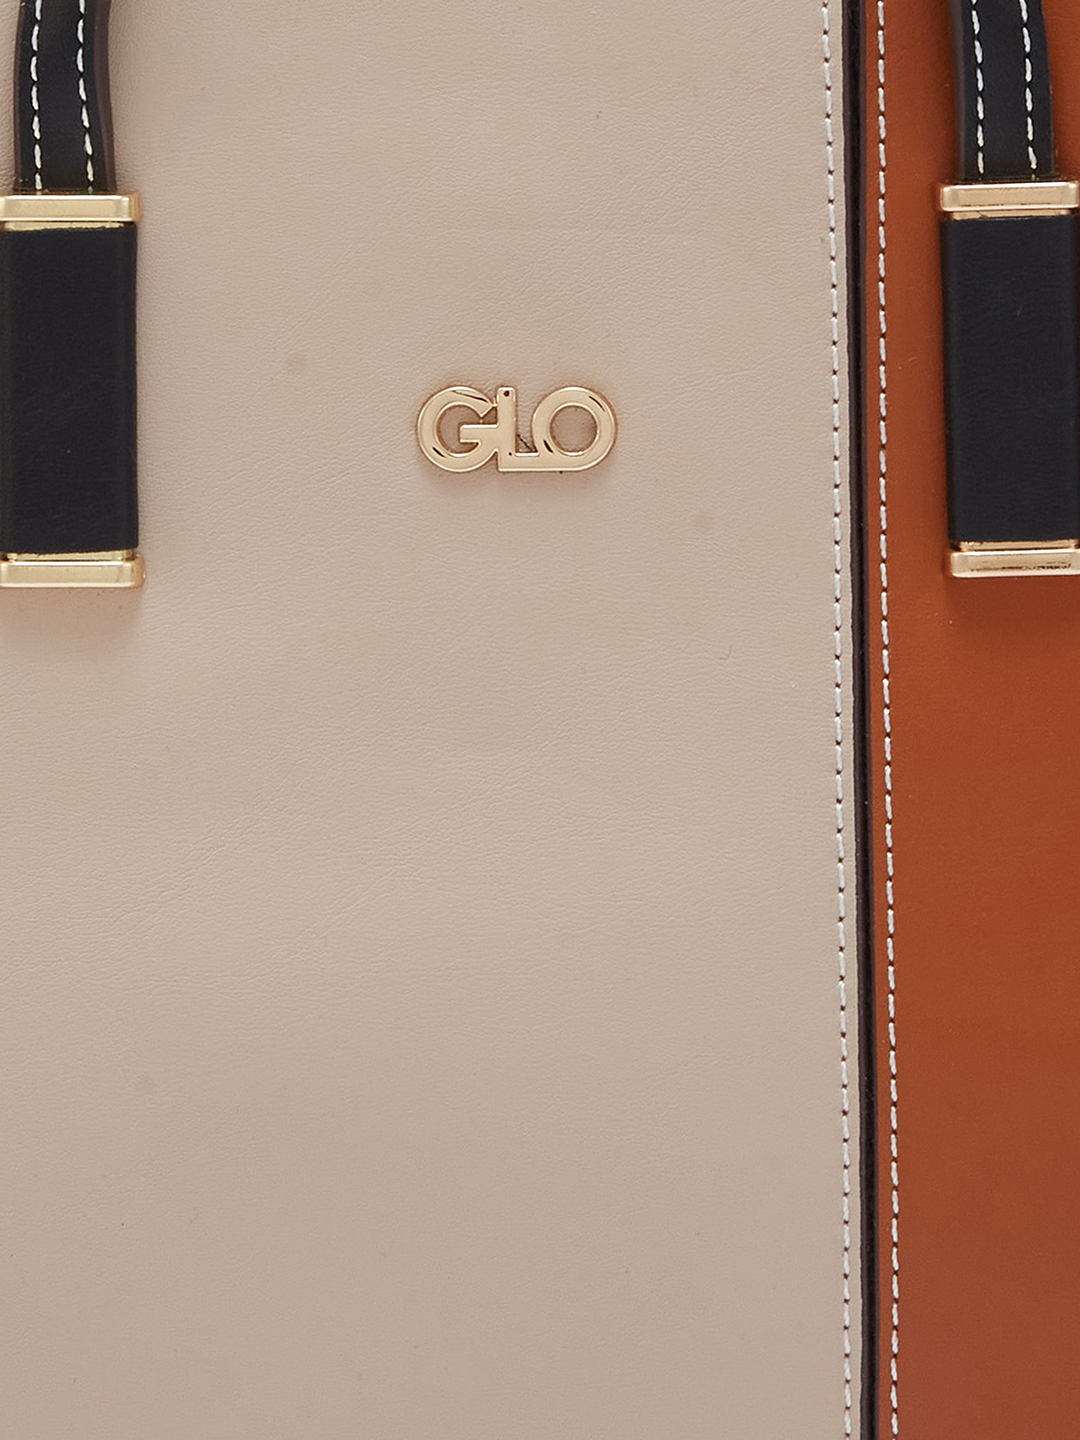 Globus Women Brown Colourblocked Casual Handheld Bag